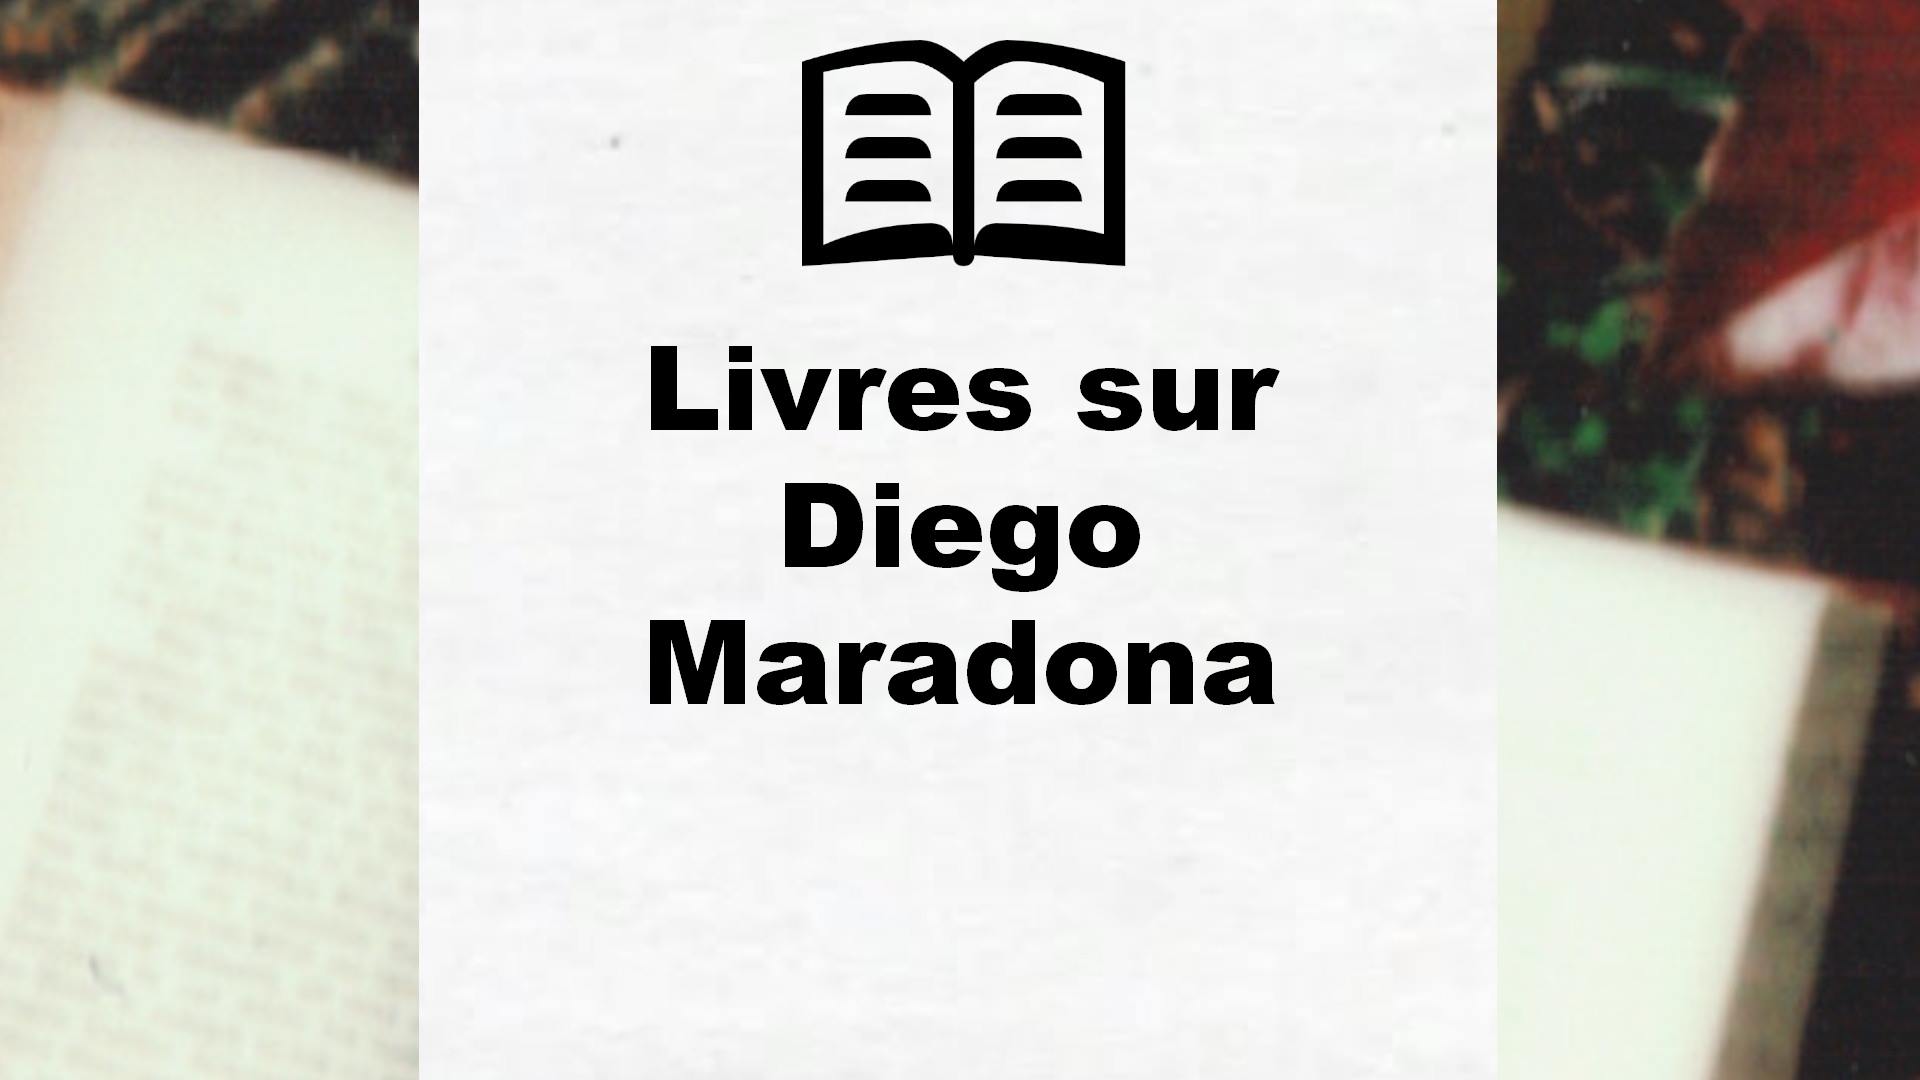 Livres sur Diego Maradona